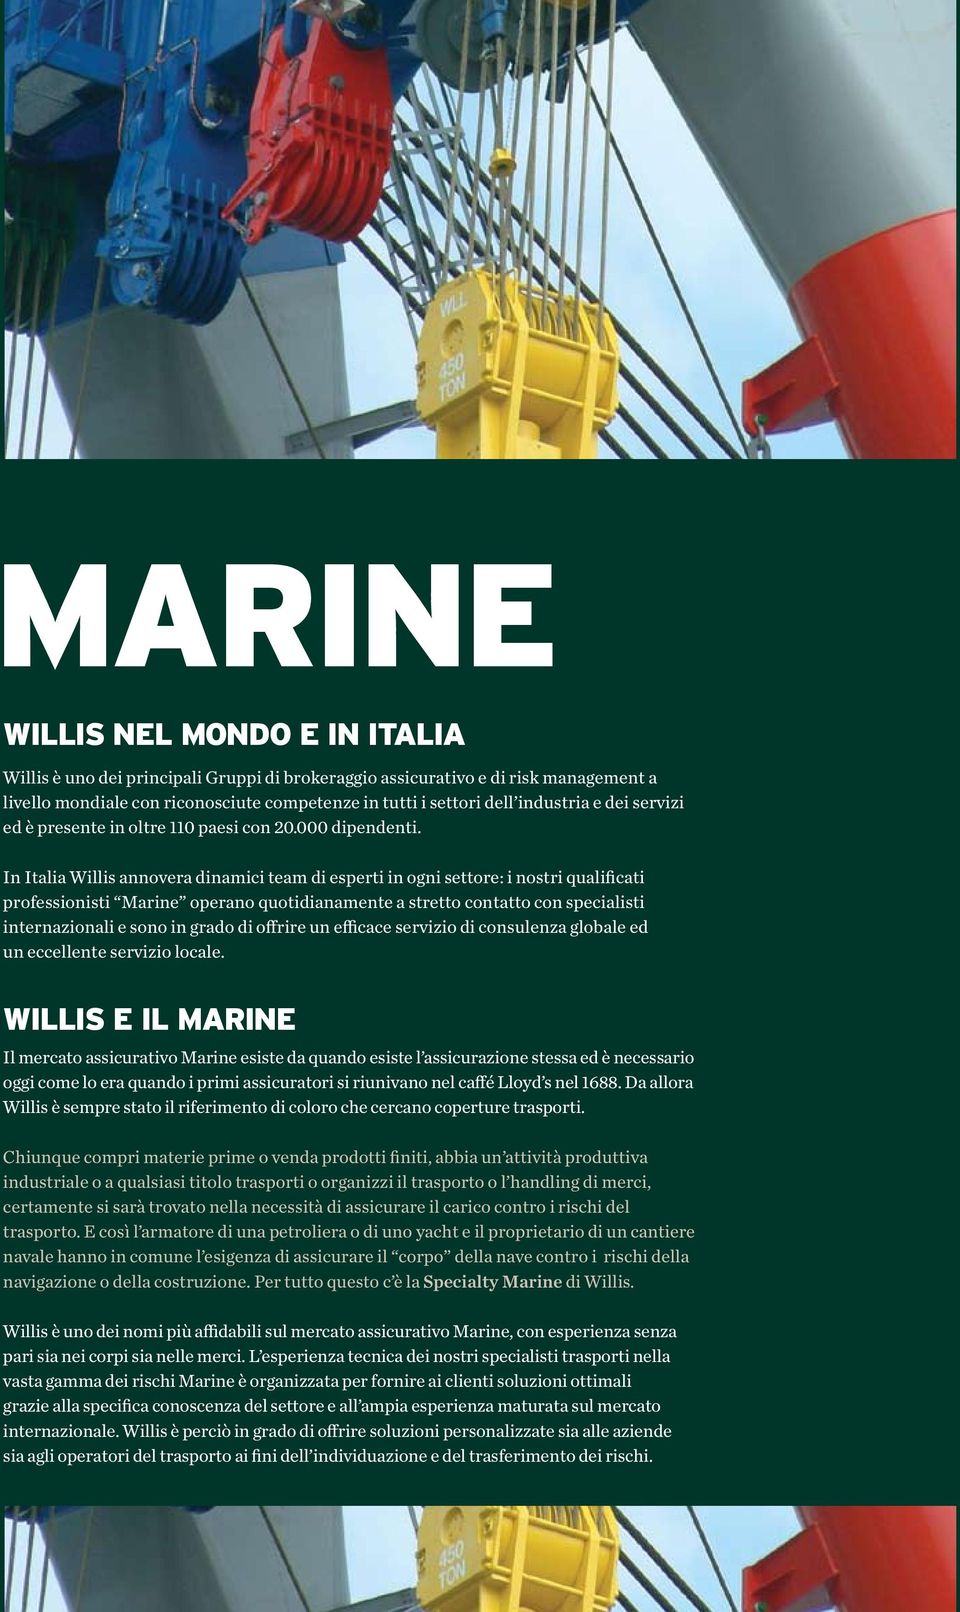 In Italia Willis annovera dinamici team di esperti in ogni settore: i nostri qualificati professionisti Marine operano quotidianamente a stretto contatto con specialisti internazionali e sono in